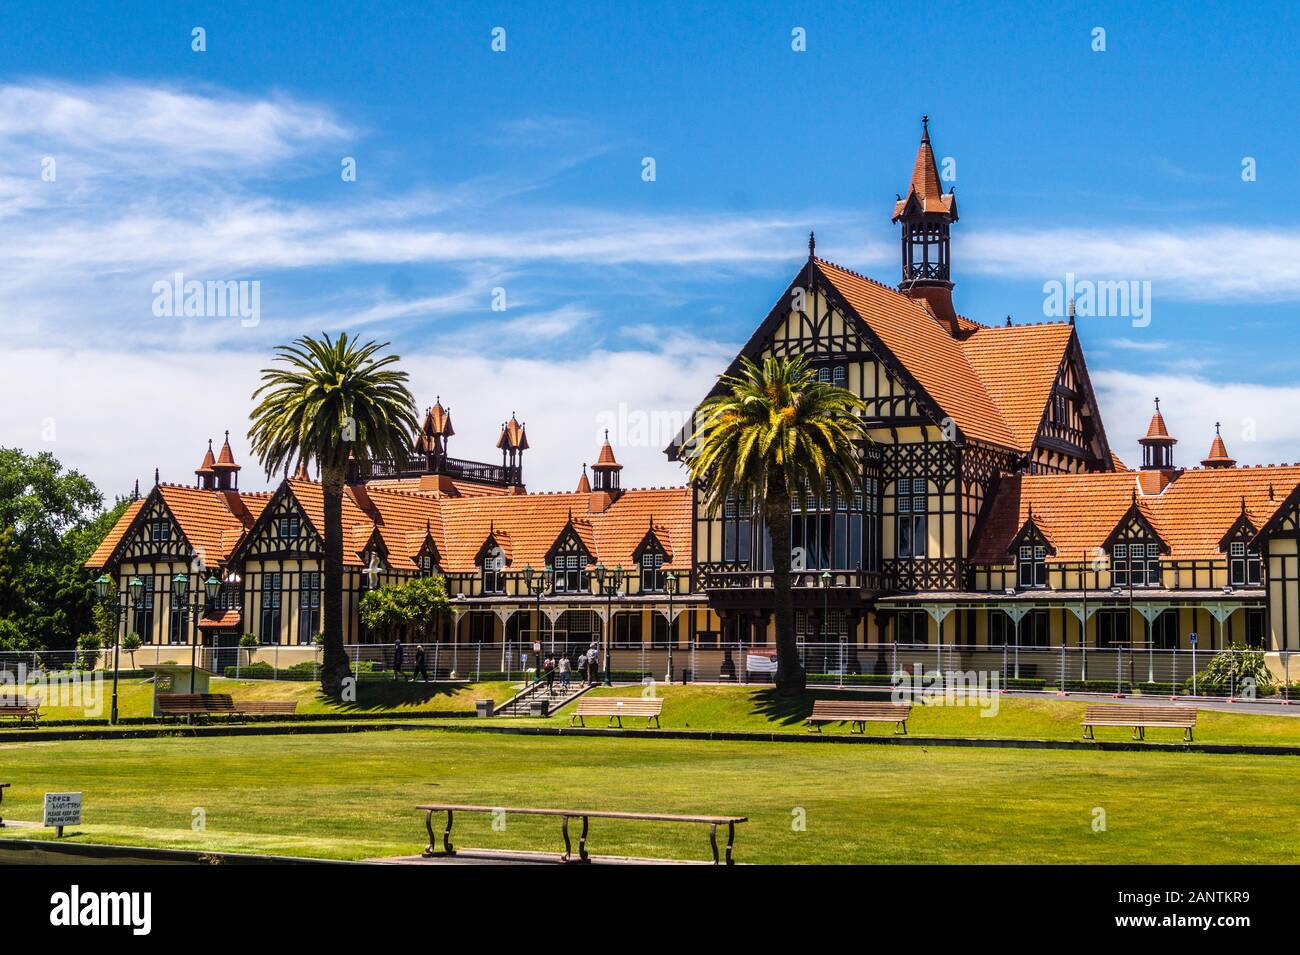 Musée de Rotorua, style néo-élisabéthain, 1908, Jardins du gouvernement, Rotorua, île du Nord, Nouvelle-Zélande Banque D'Images